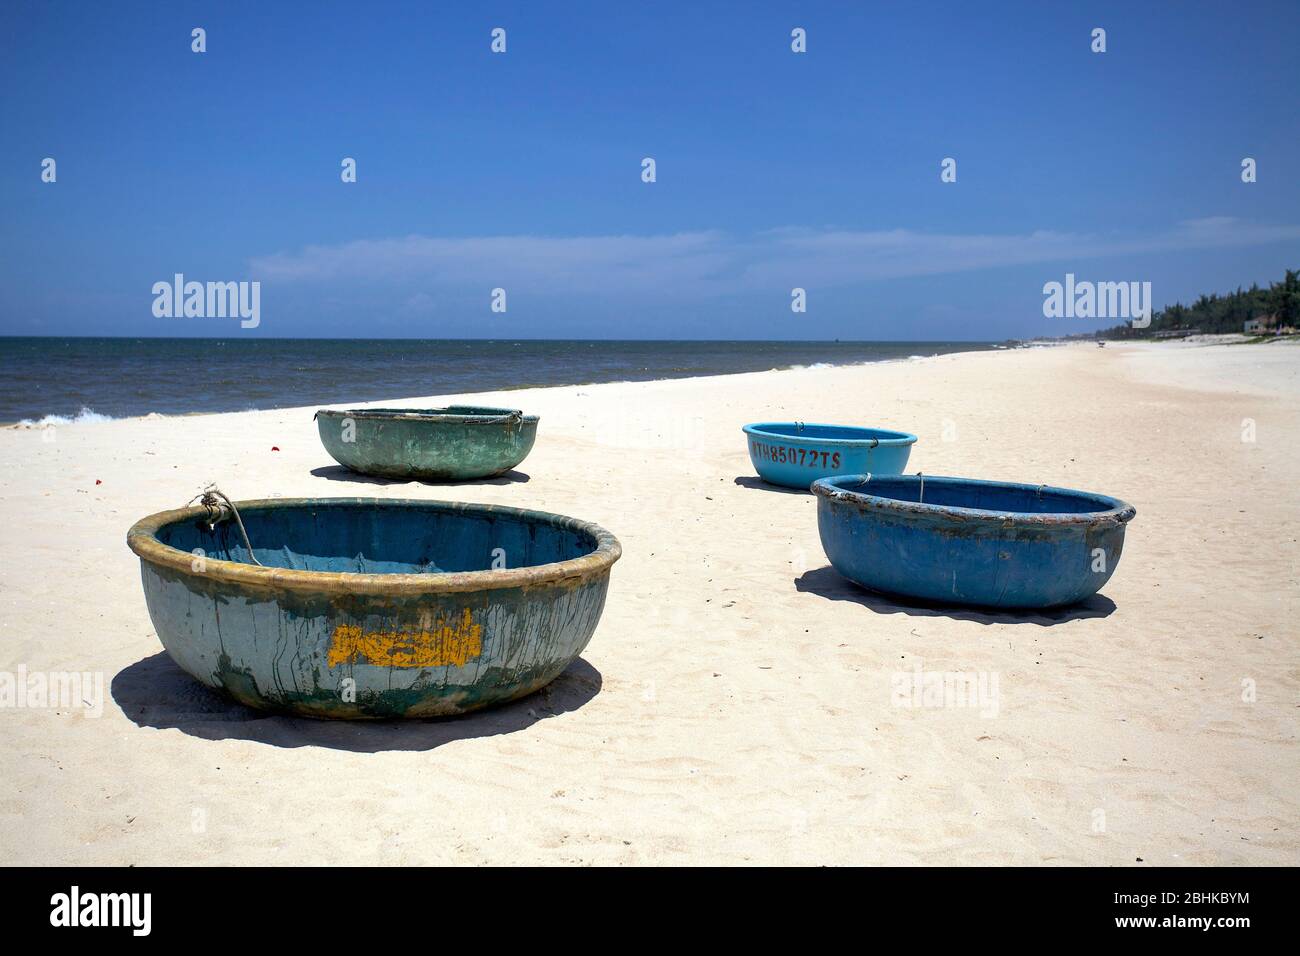 Bateaux de pêche bleus sur la plage, plage de Mui ne, Vietnam. Banque D'Images